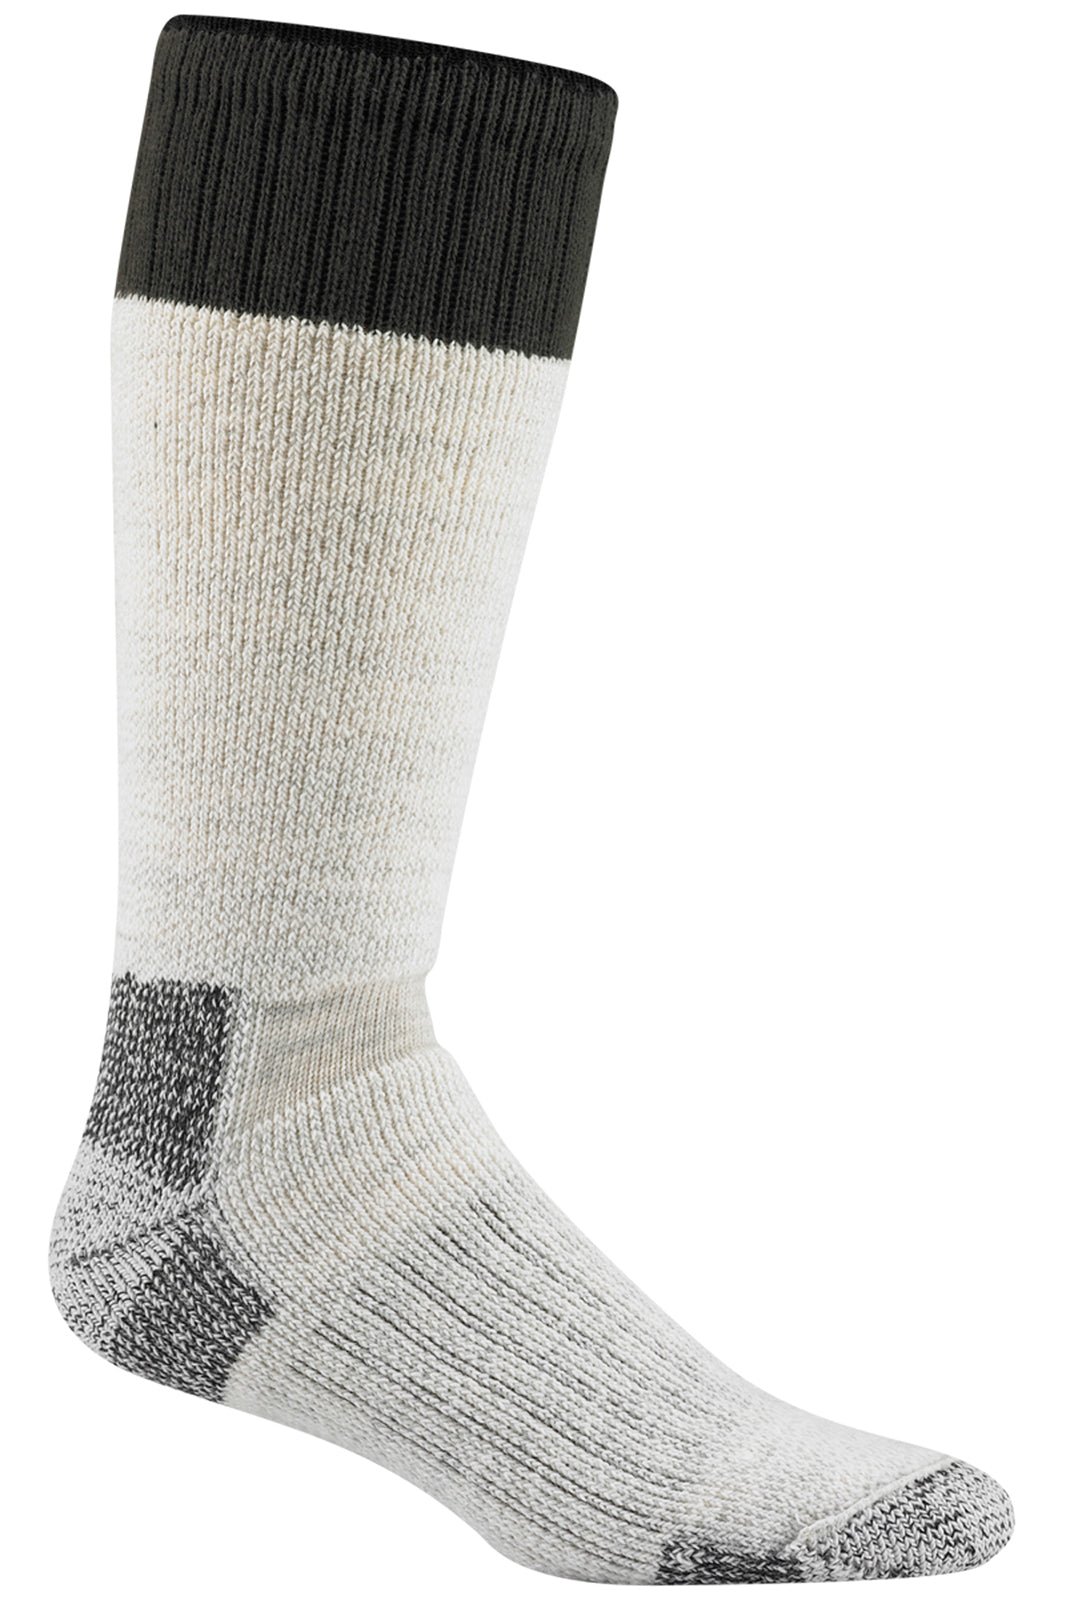 Wigwam Field Boot Sock